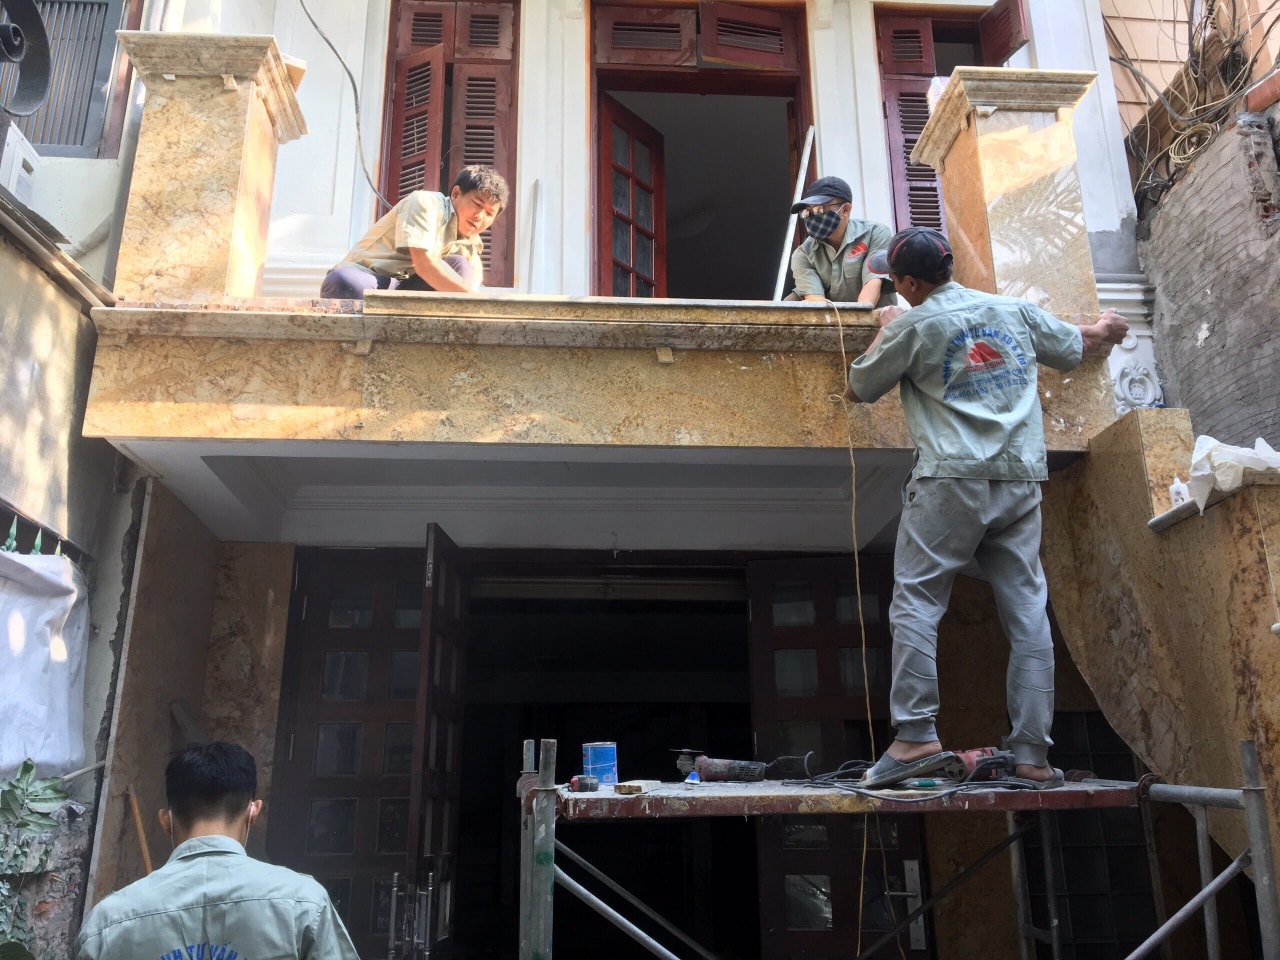 Thiết kế, sửa nhà trọn gói tại P. Ngọc Khánh, Q. Ba Đình, TP Hà Nội